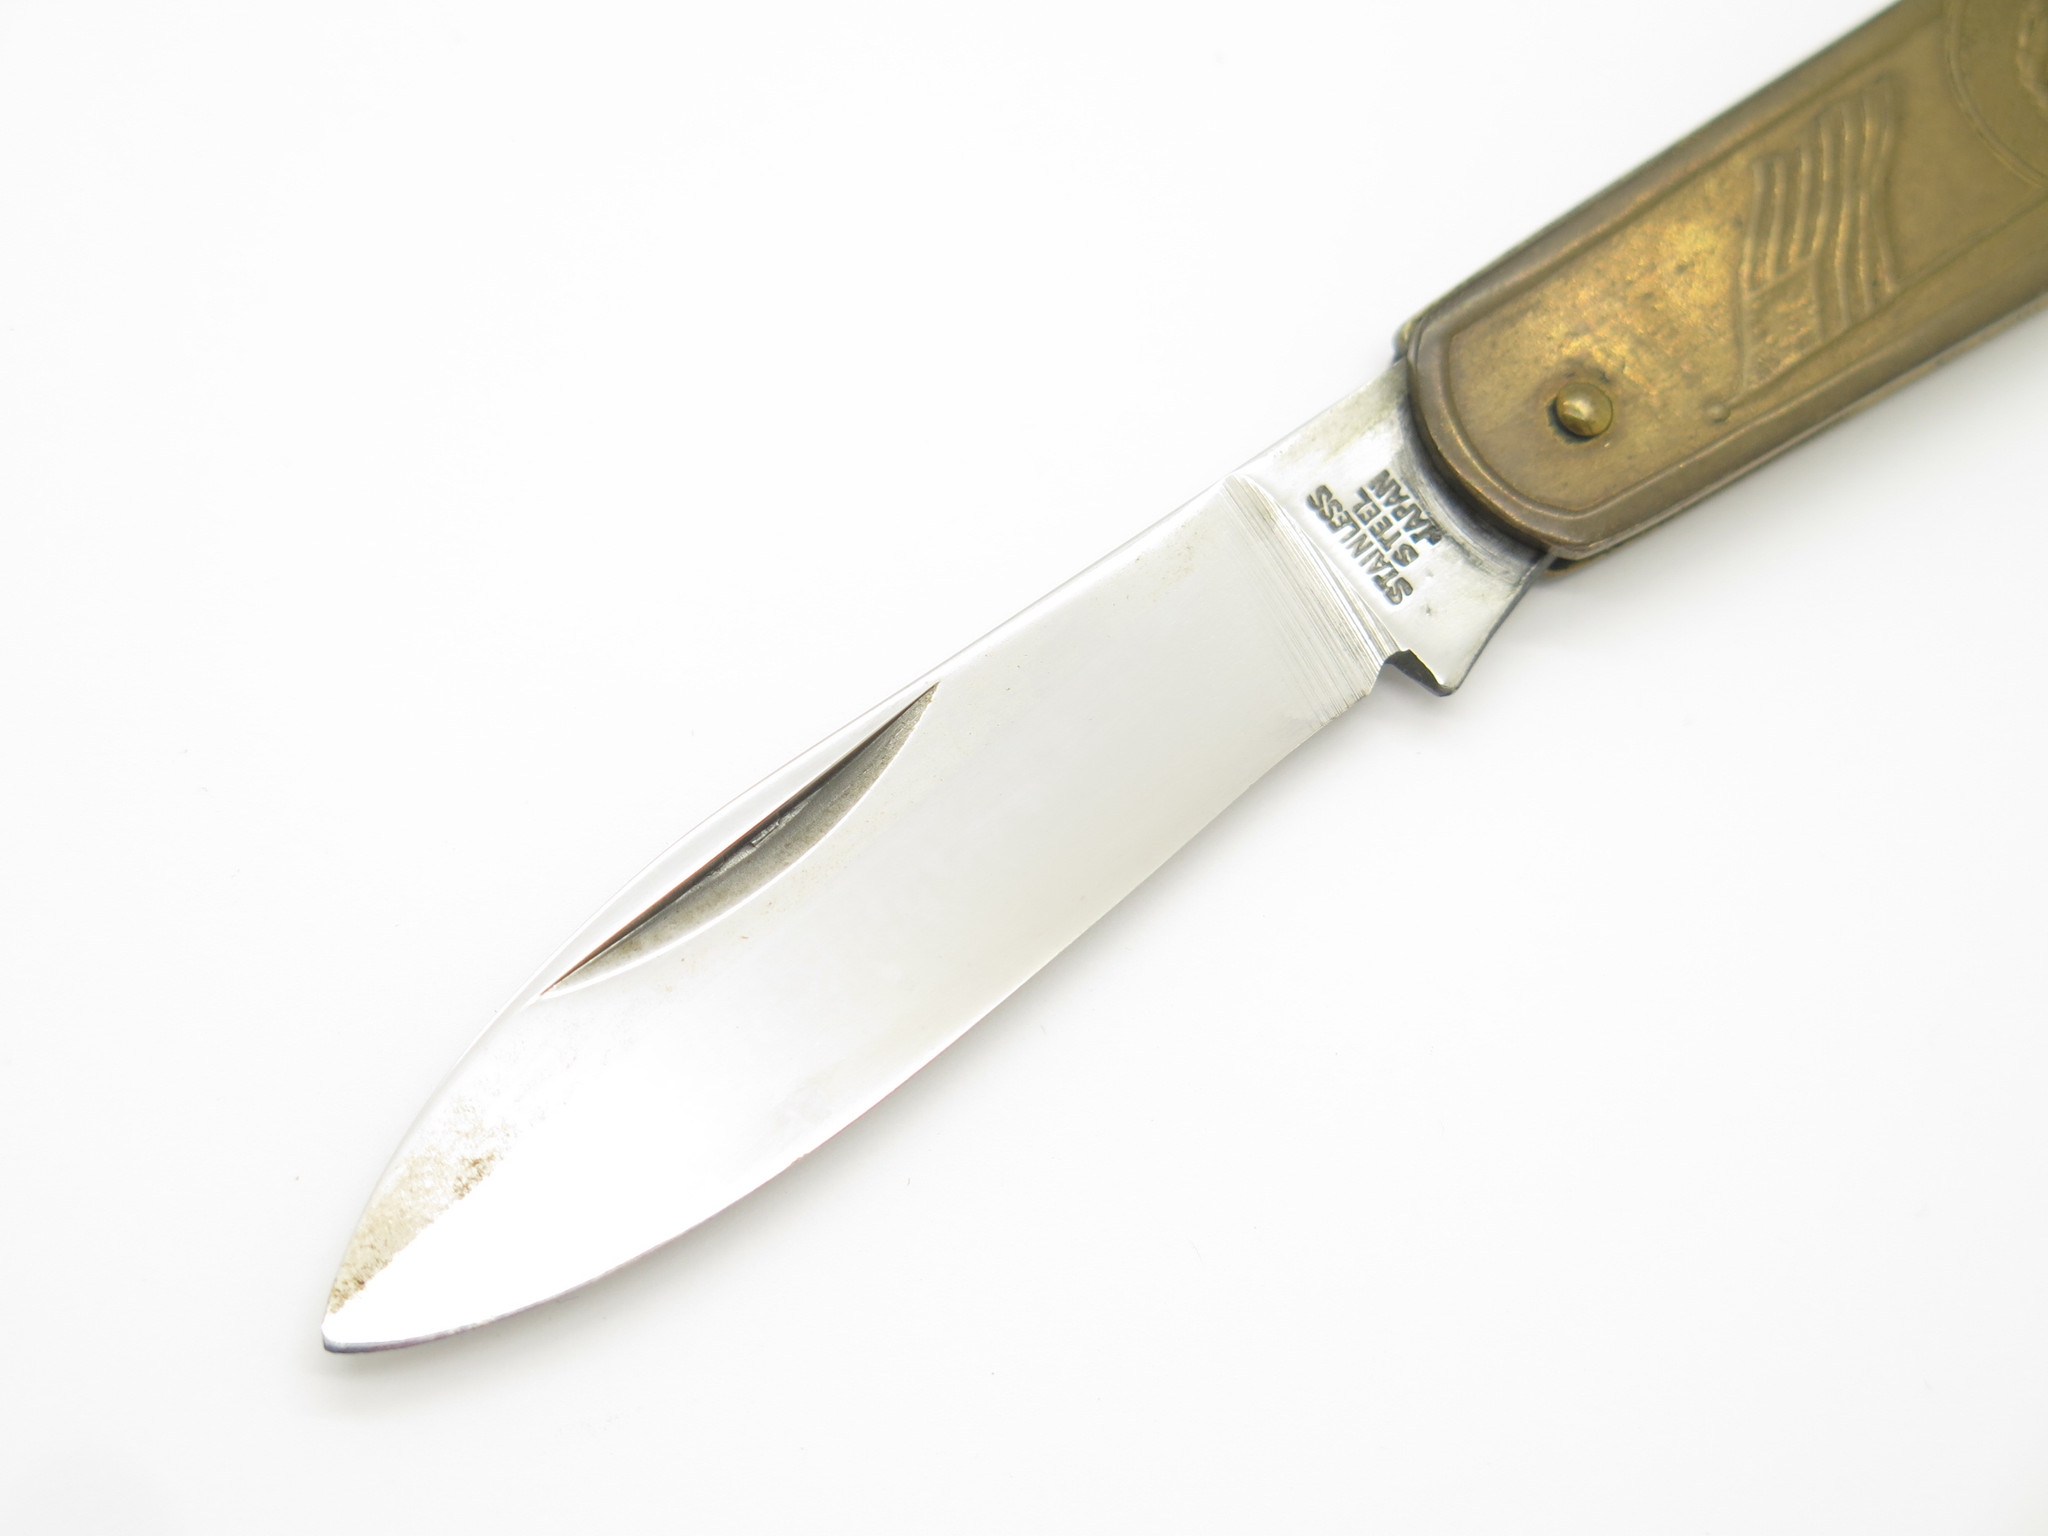 Vintage Richards folding pocket knife - tools - by owner - craigslist